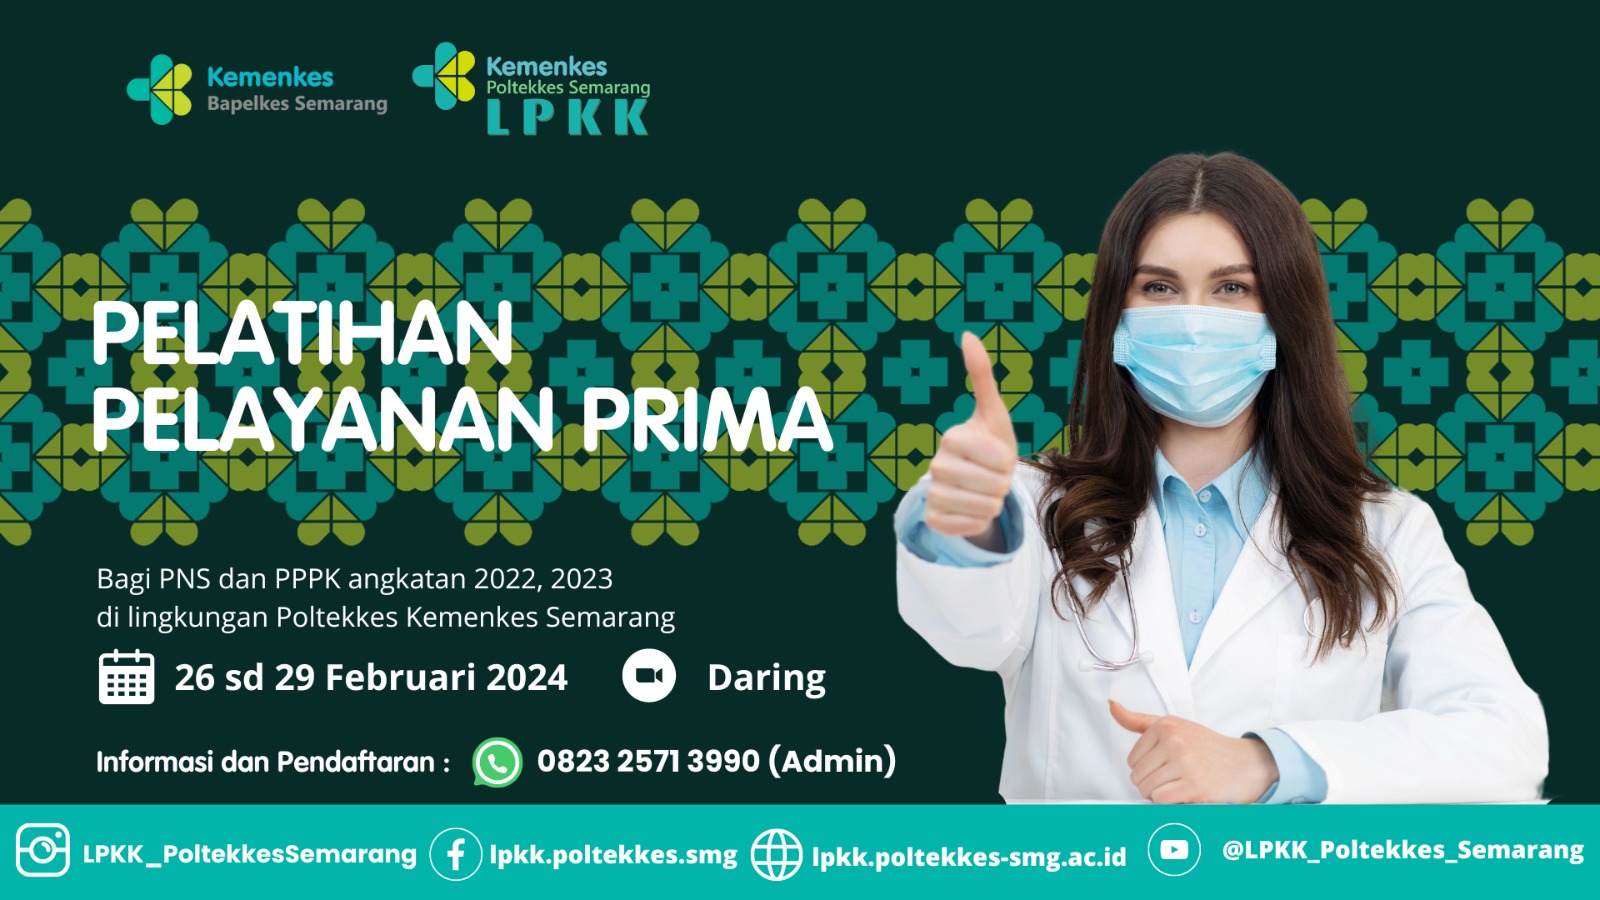 Pelatihan Pelayanan Prima berbasis Softskills bagi SDM Kesehatan Poltekkes Kemenkes Semarang